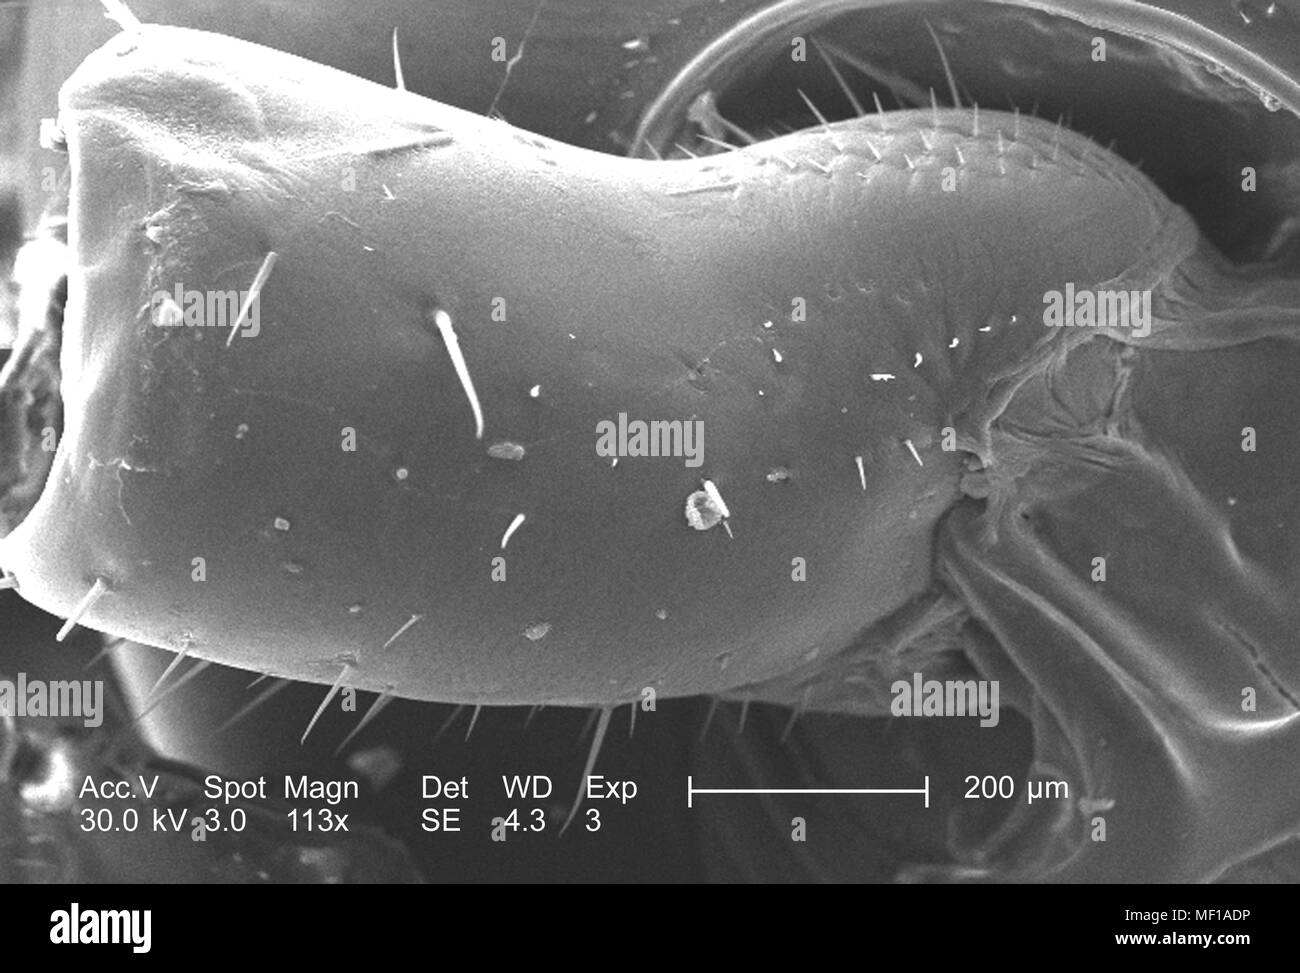 Primo segmento di un misterioso roach regione capo e antenna, raffigurato nella 113x di scansione ingrandita al microscopio elettronico (SEM) immagine, 2005. Immagine cortesia di centri per il controllo delle malattie (CDC) / Janice Haney Carr. () Foto Stock